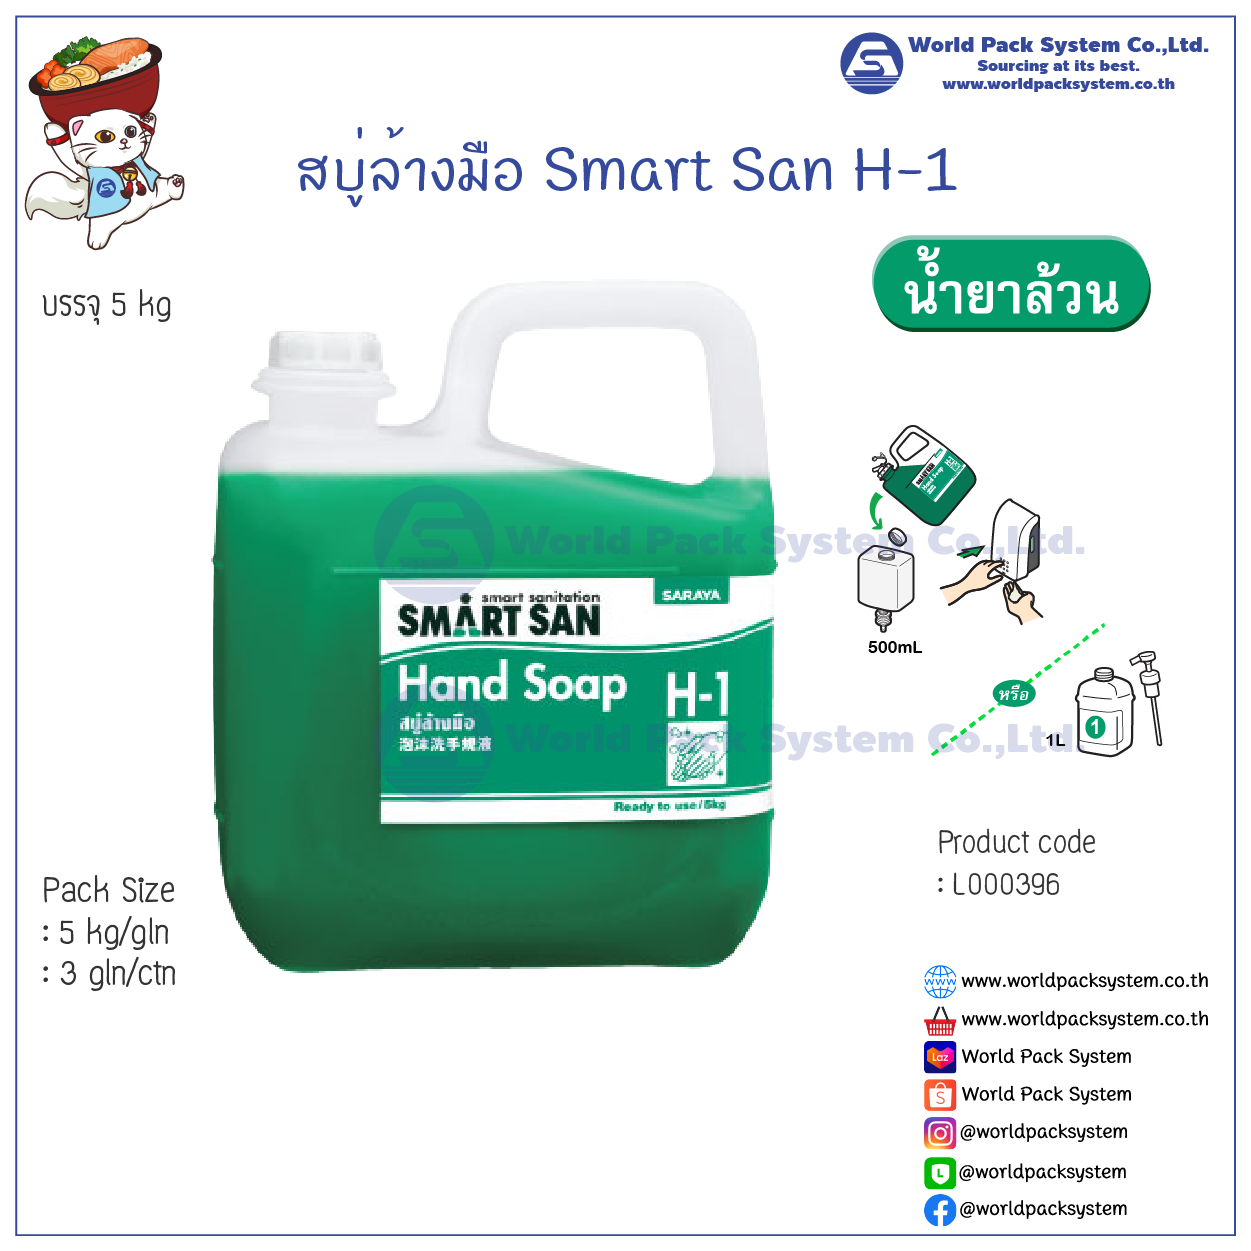 Smart San Hand Soap H-1 Size 5 kg.